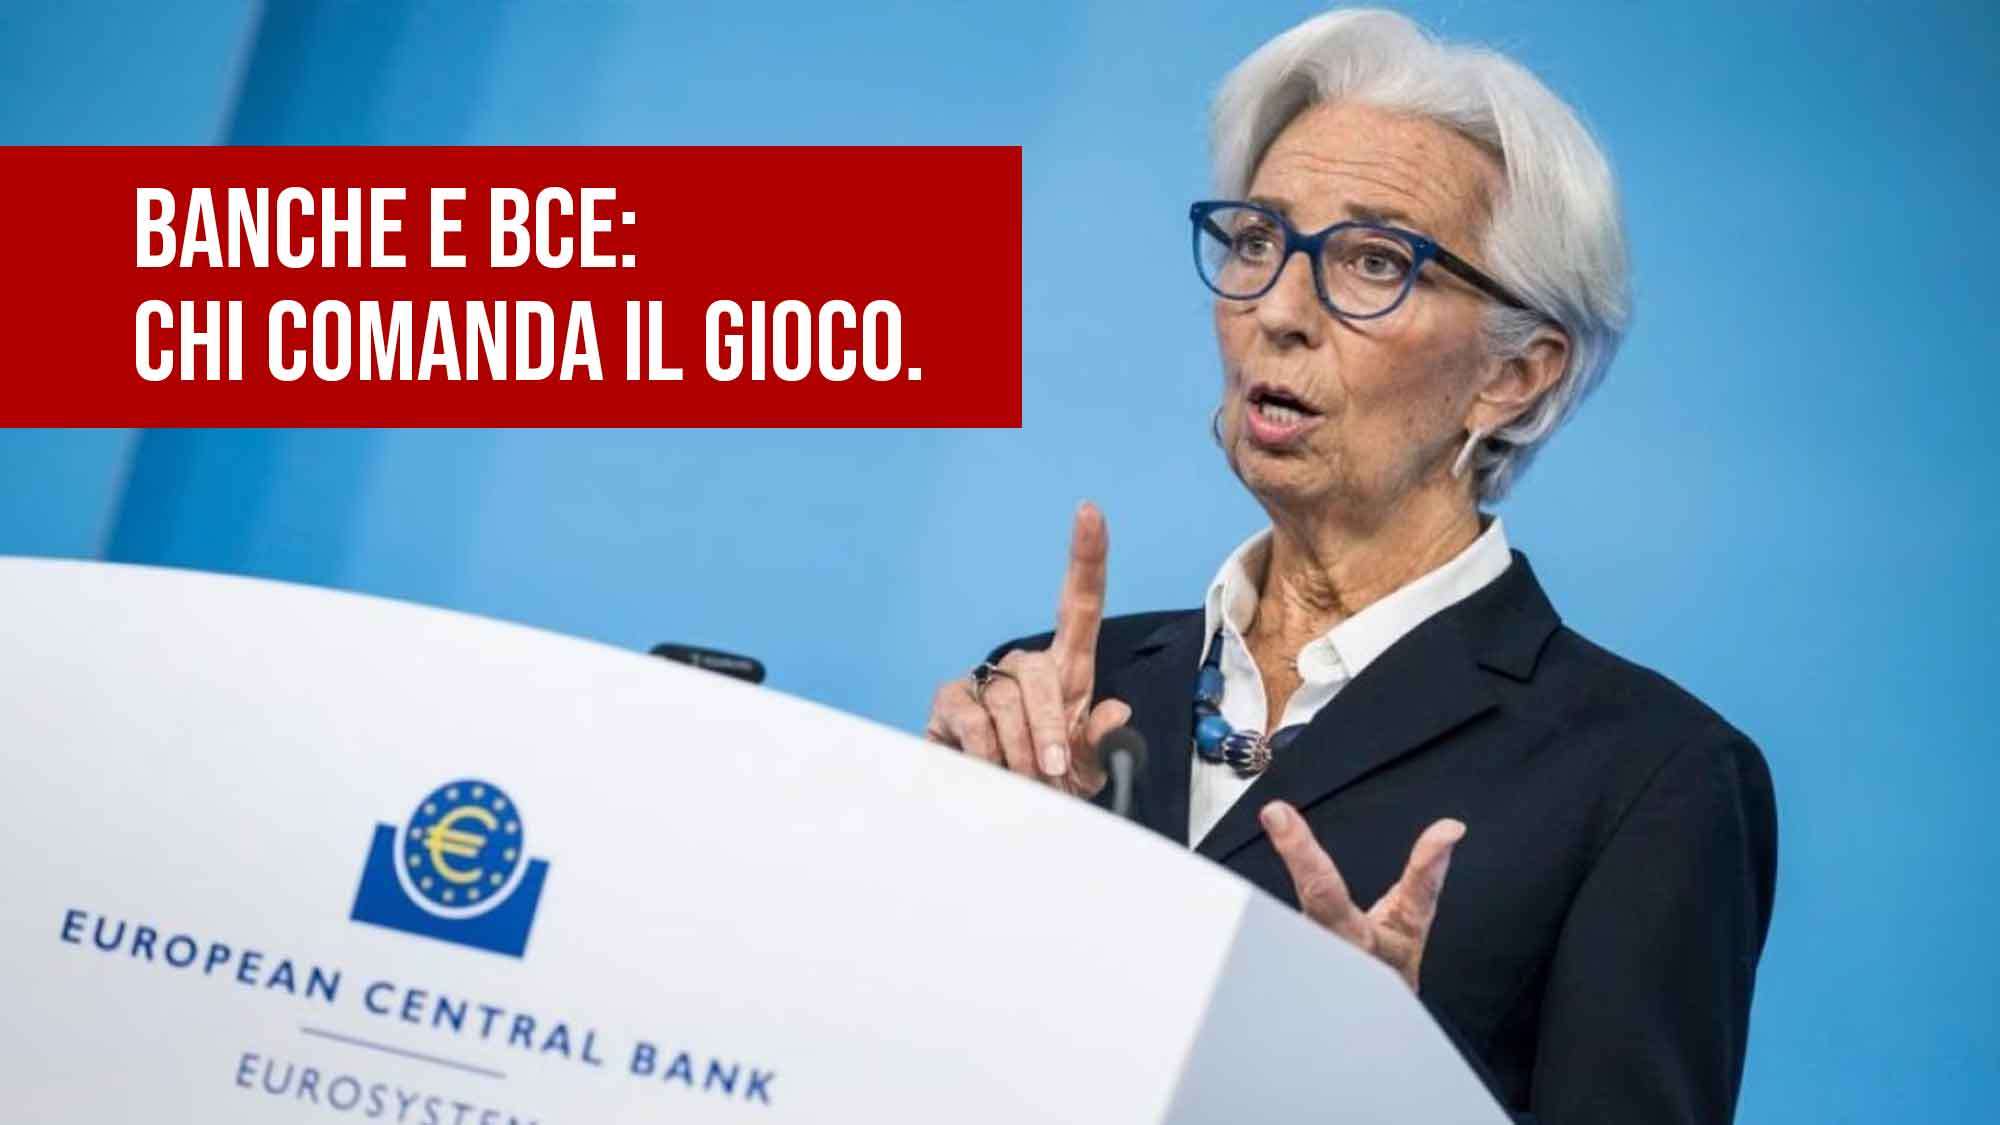 Banche e Bce: Chi comanda il gioco.